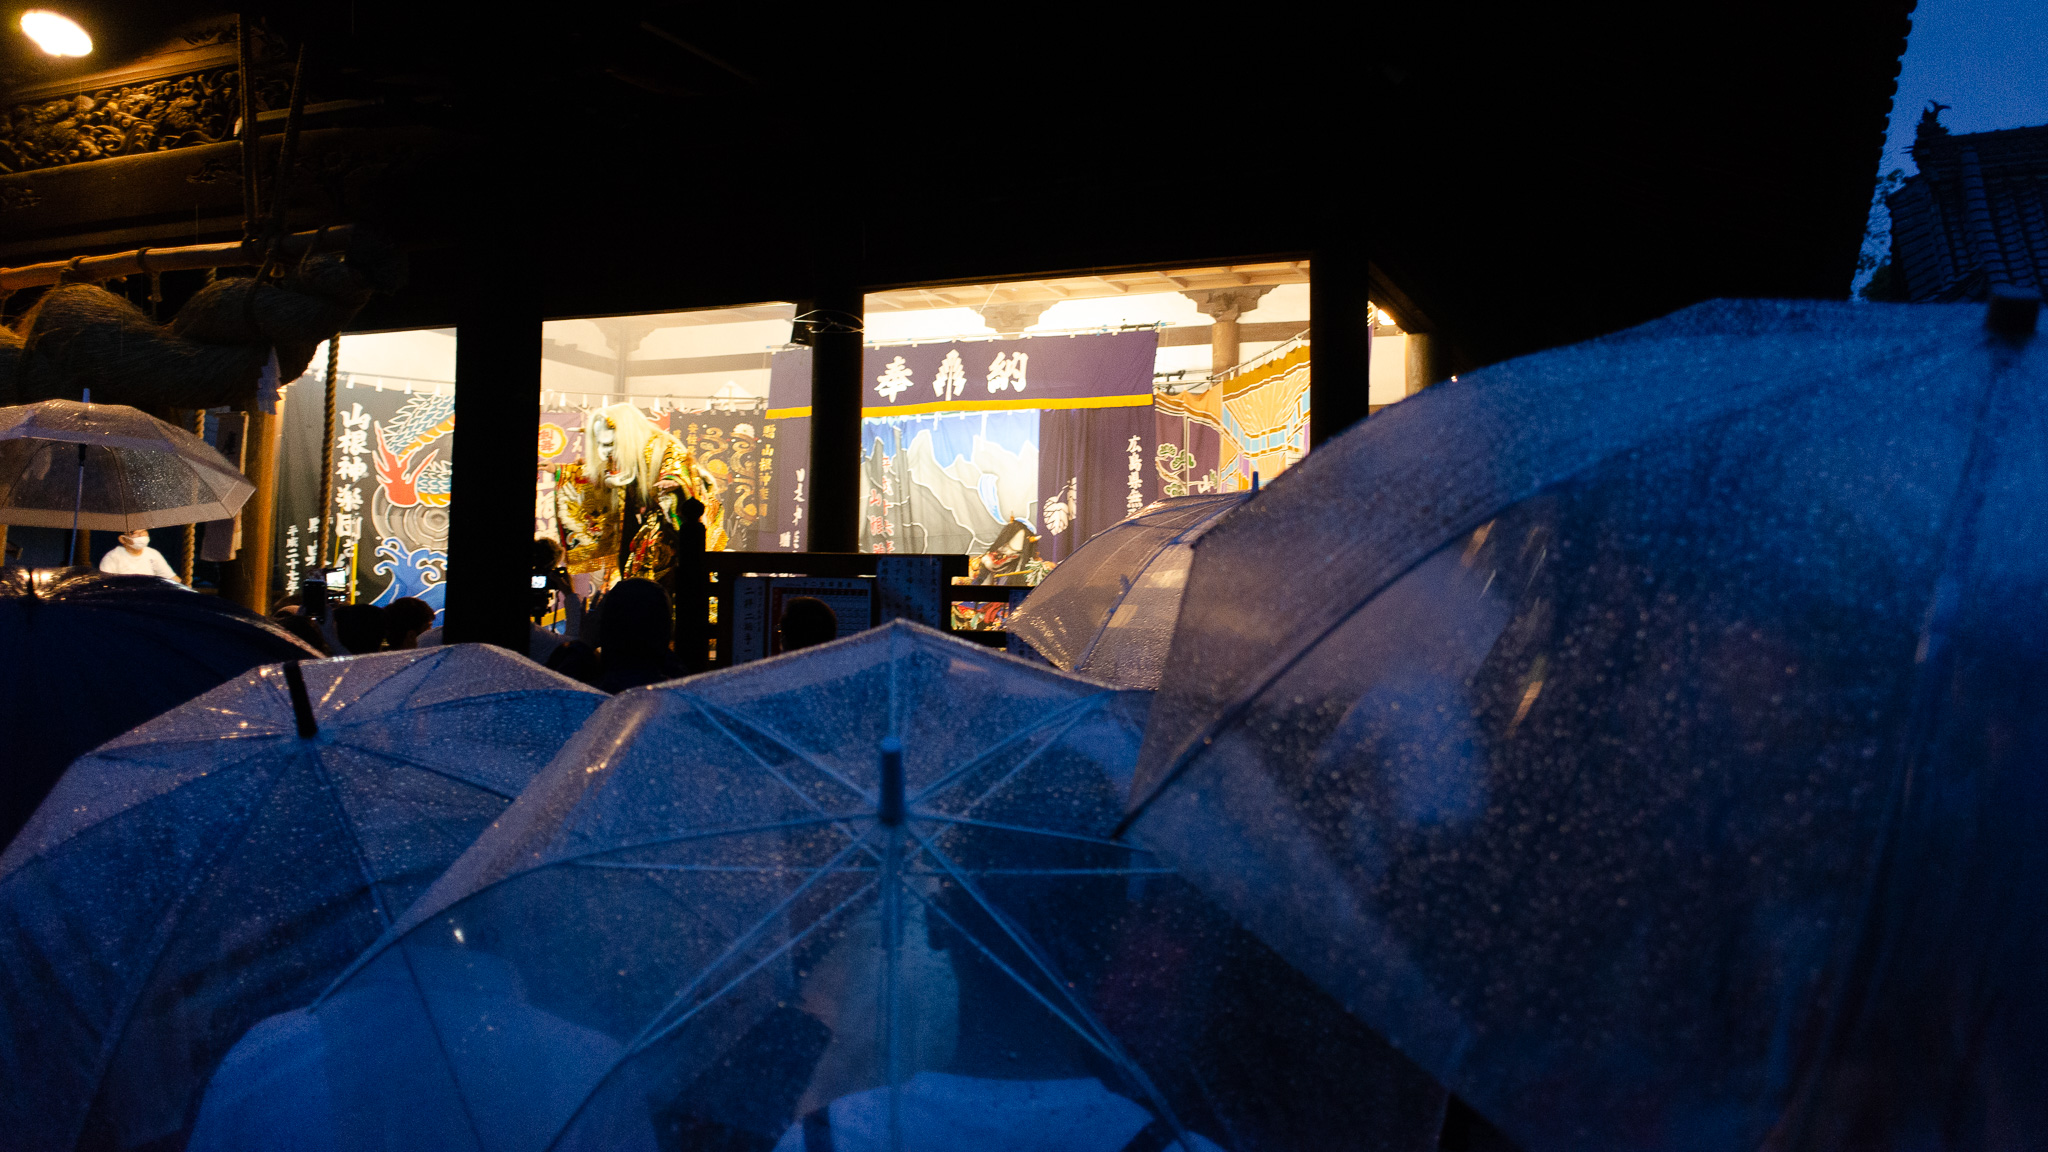 御建神社祇園祭で雨の中の神楽上演